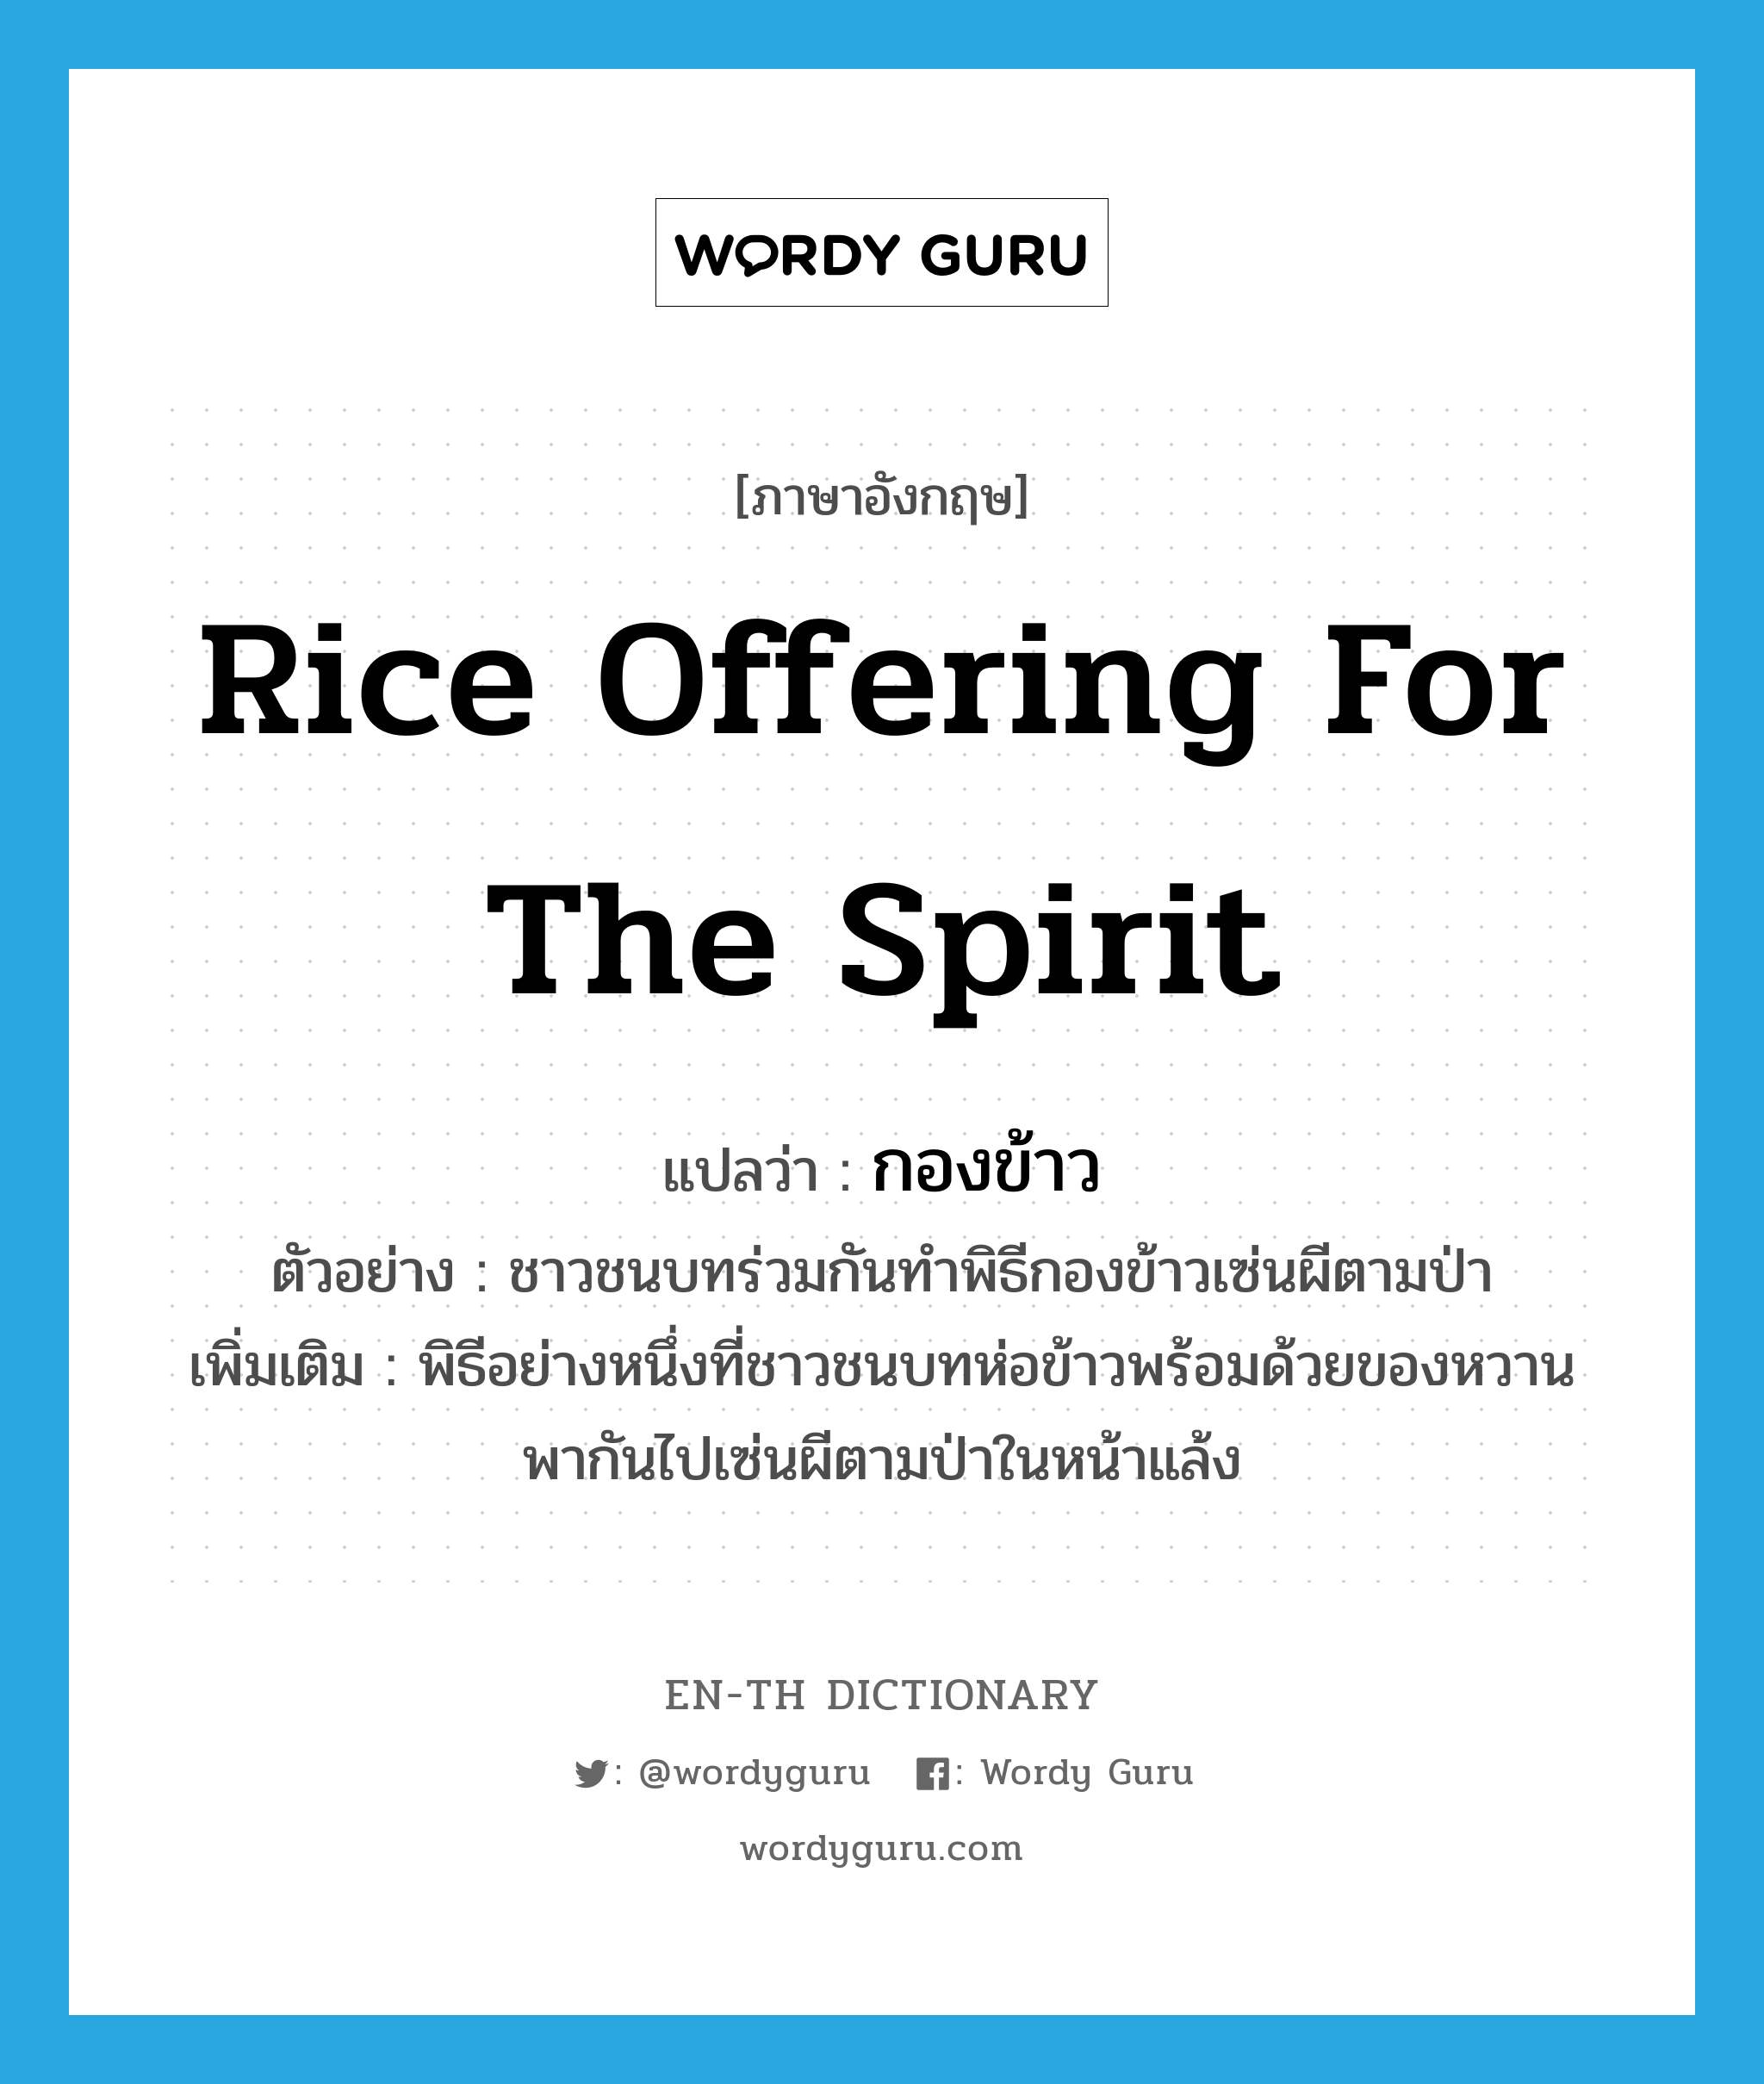 rice offering for the spirit แปลว่า?, คำศัพท์ภาษาอังกฤษ rice offering for the spirit แปลว่า กองข้าว ประเภท N ตัวอย่าง ชาวชนบทร่วมกันทำพิธีกองข้าวเซ่นผีตามป่า เพิ่มเติม พิธีอย่างหนึ่งที่ชาวชนบทห่อข้าวพร้อมด้วยของหวาน พากันไปเซ่นผีตามป่าในหน้าแล้ง หมวด N